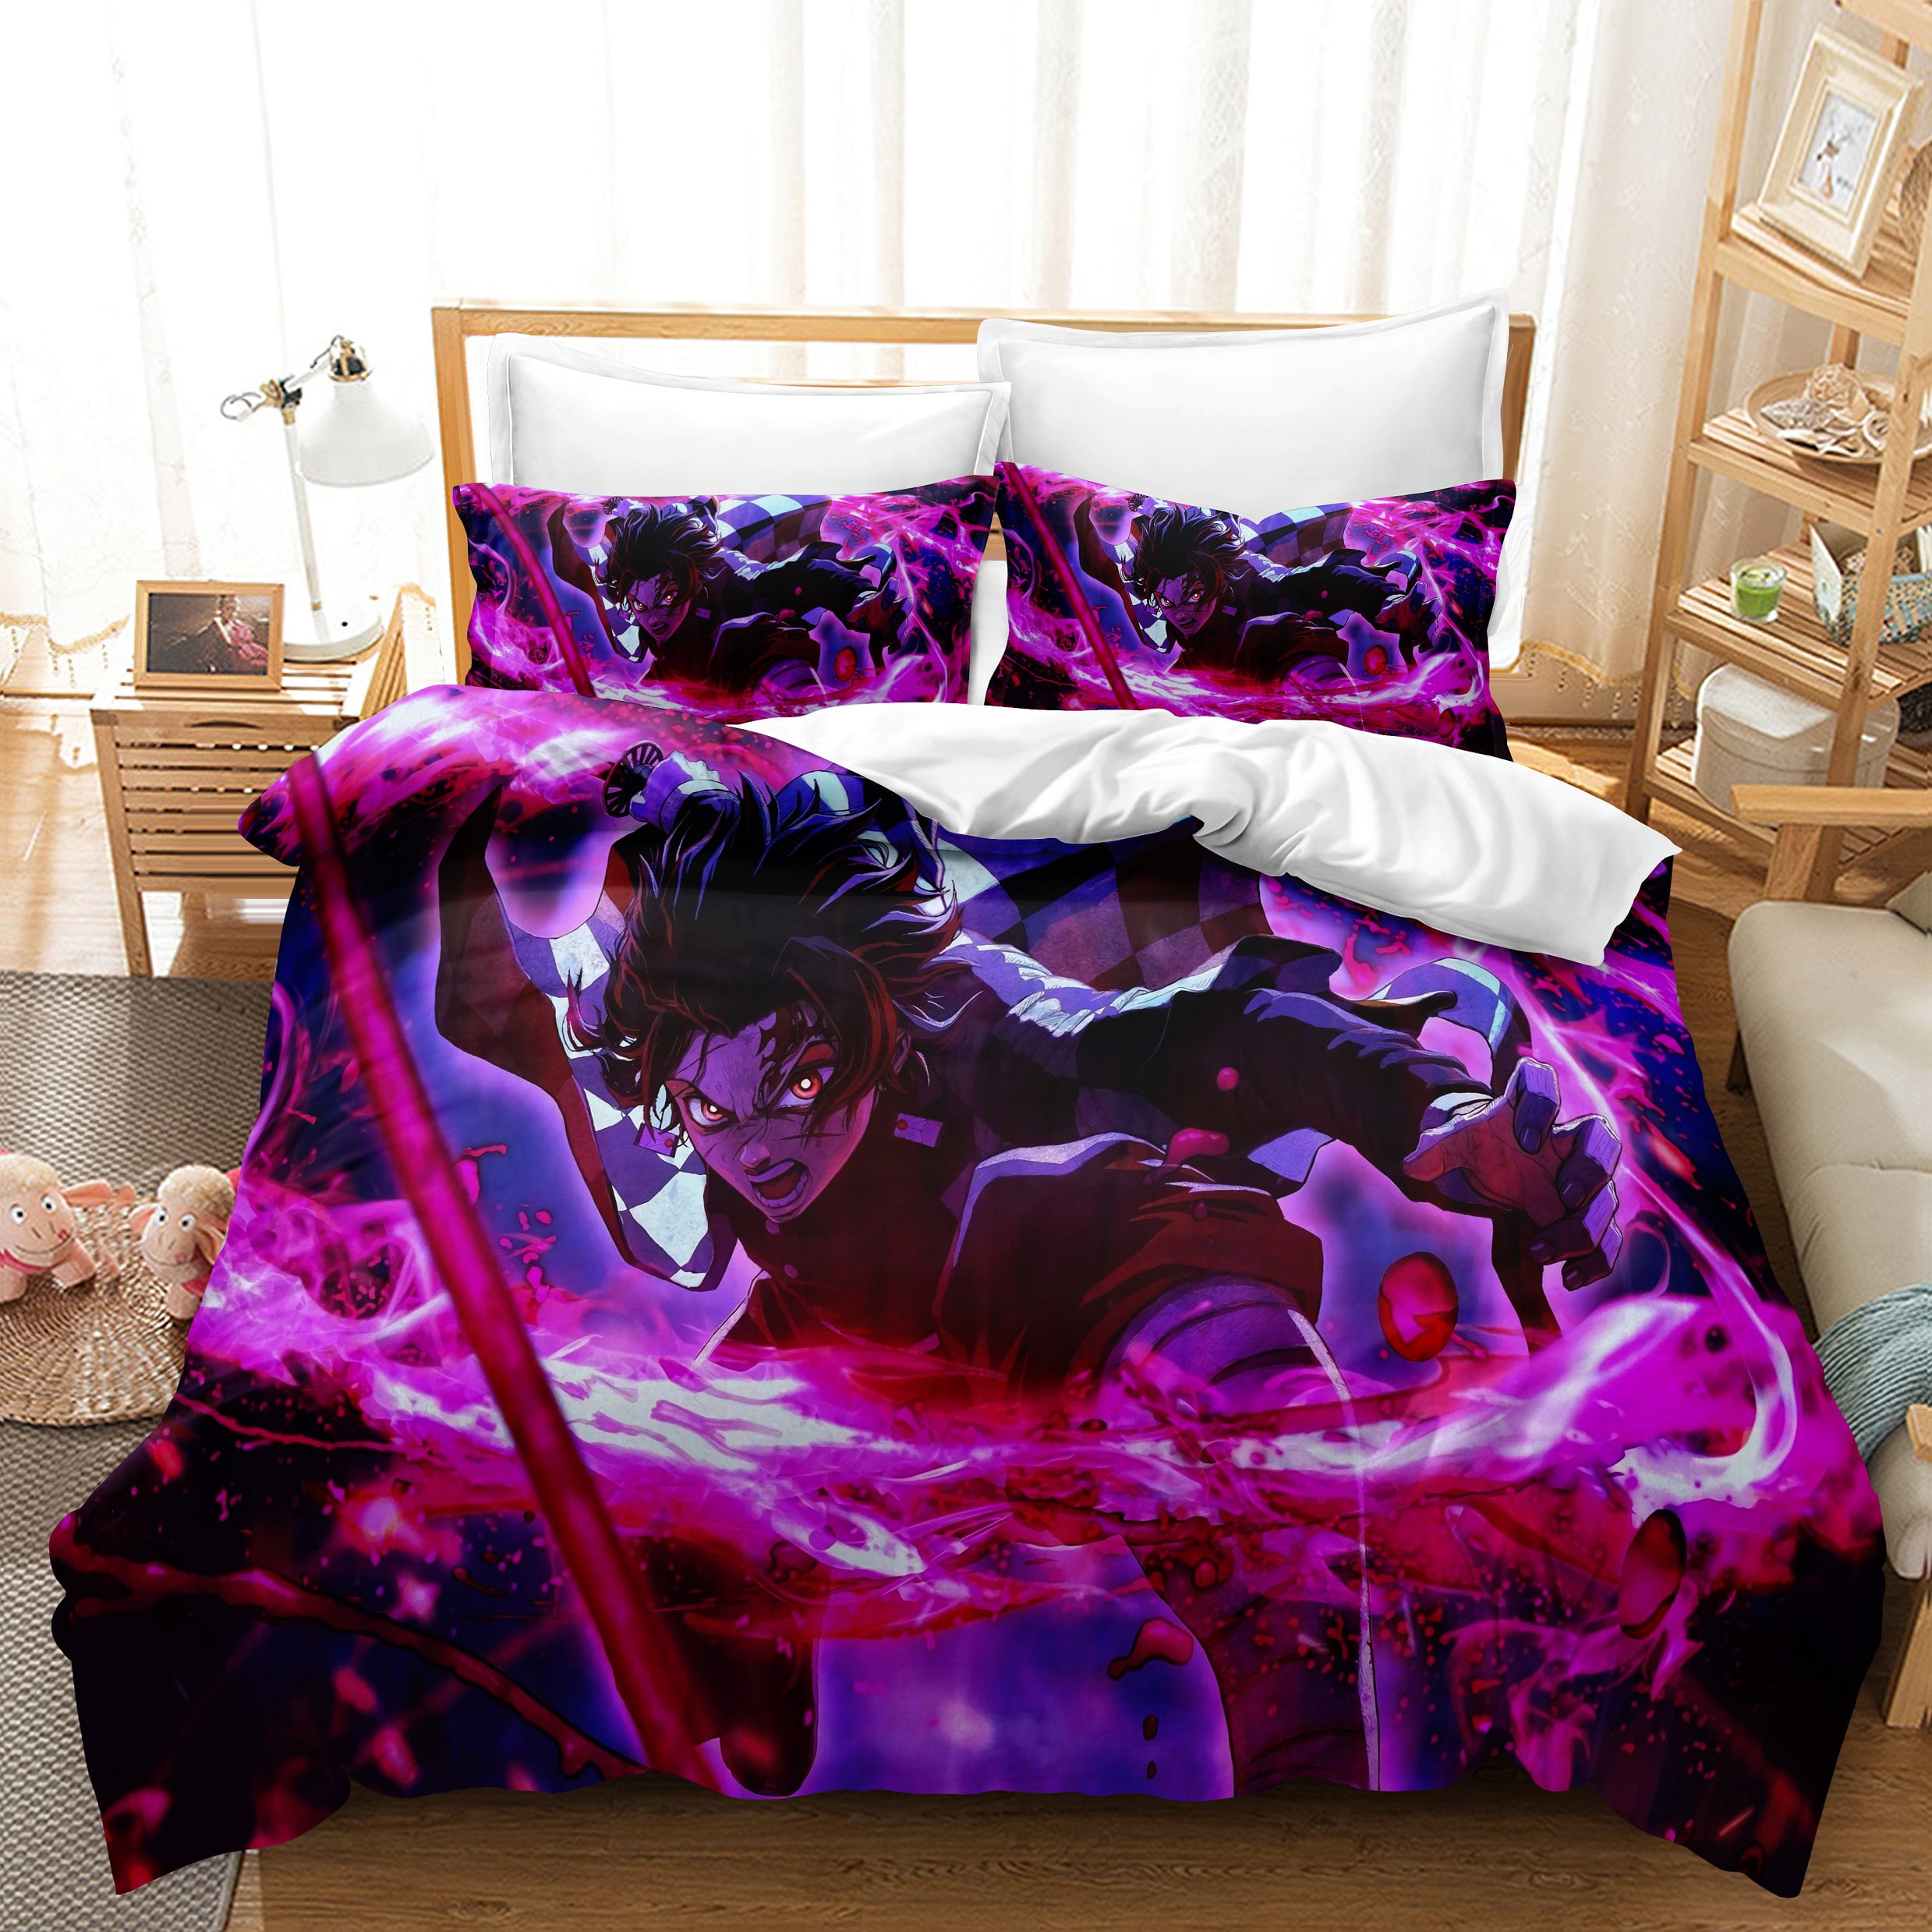 3D Disney Anime Bedding Set Cars Duvet Cover Pillowcase Comforter/Quilt Cover